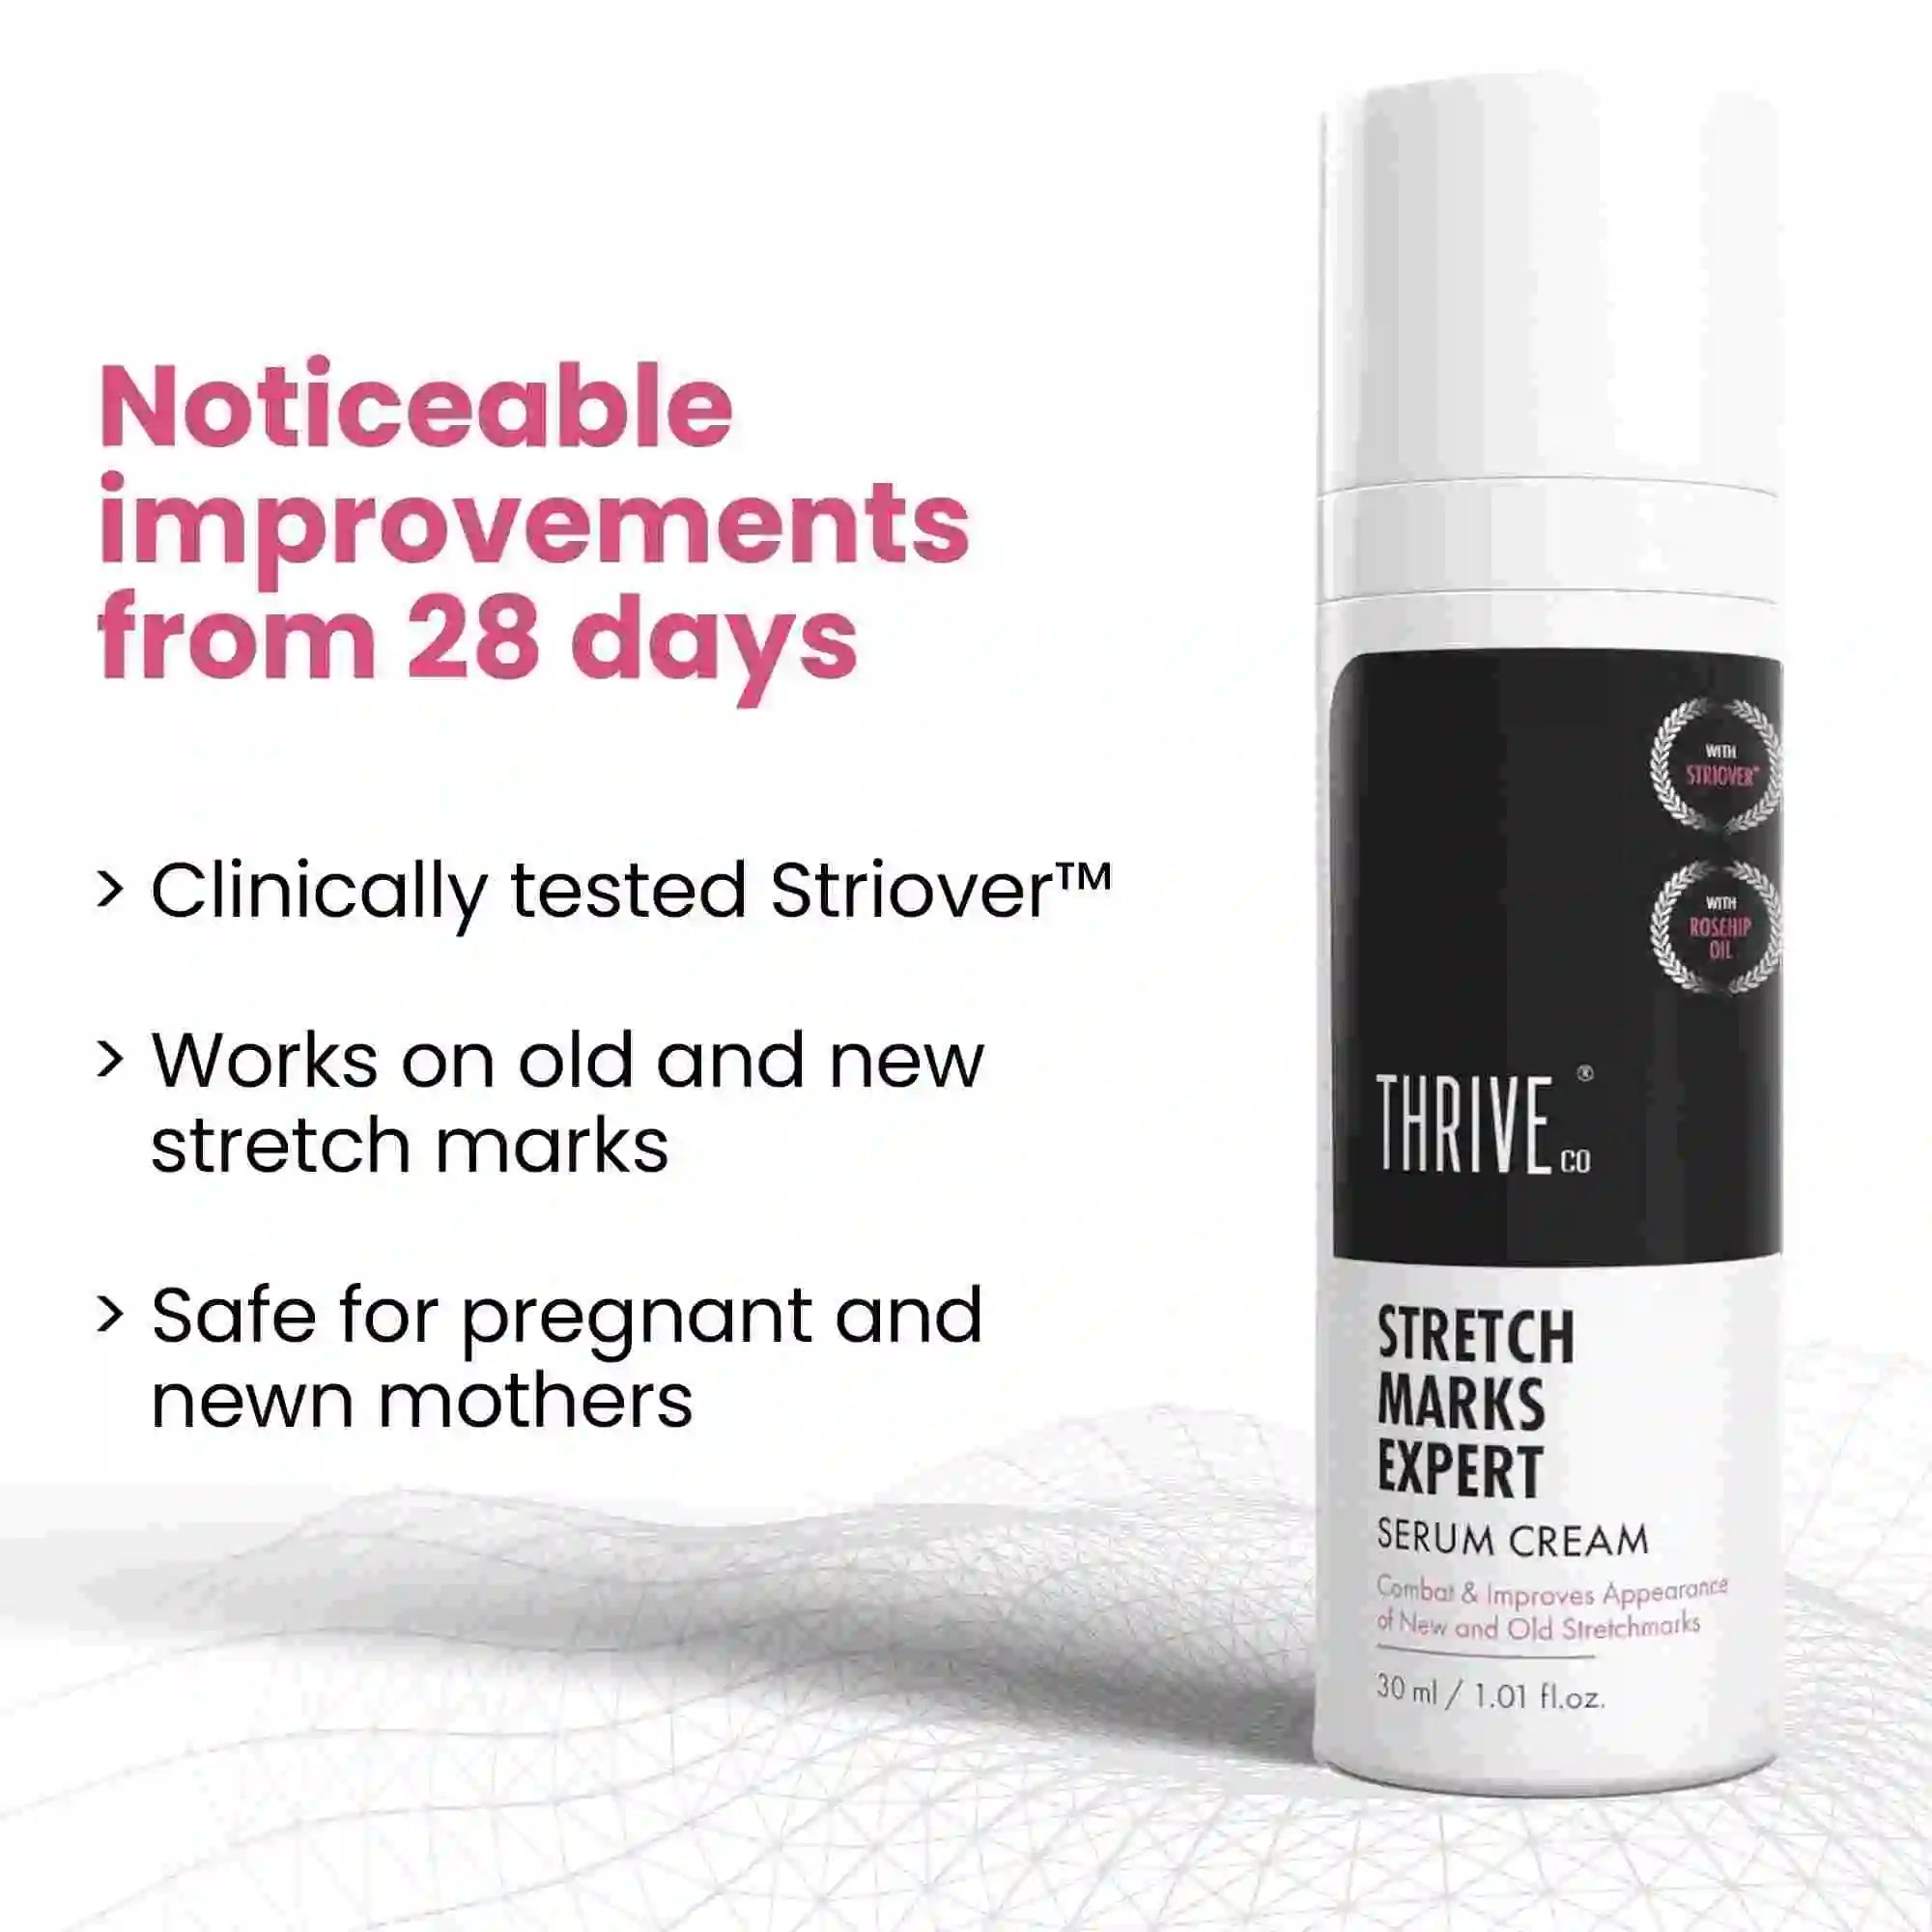 thriveco stretch marks expert serum cream for women